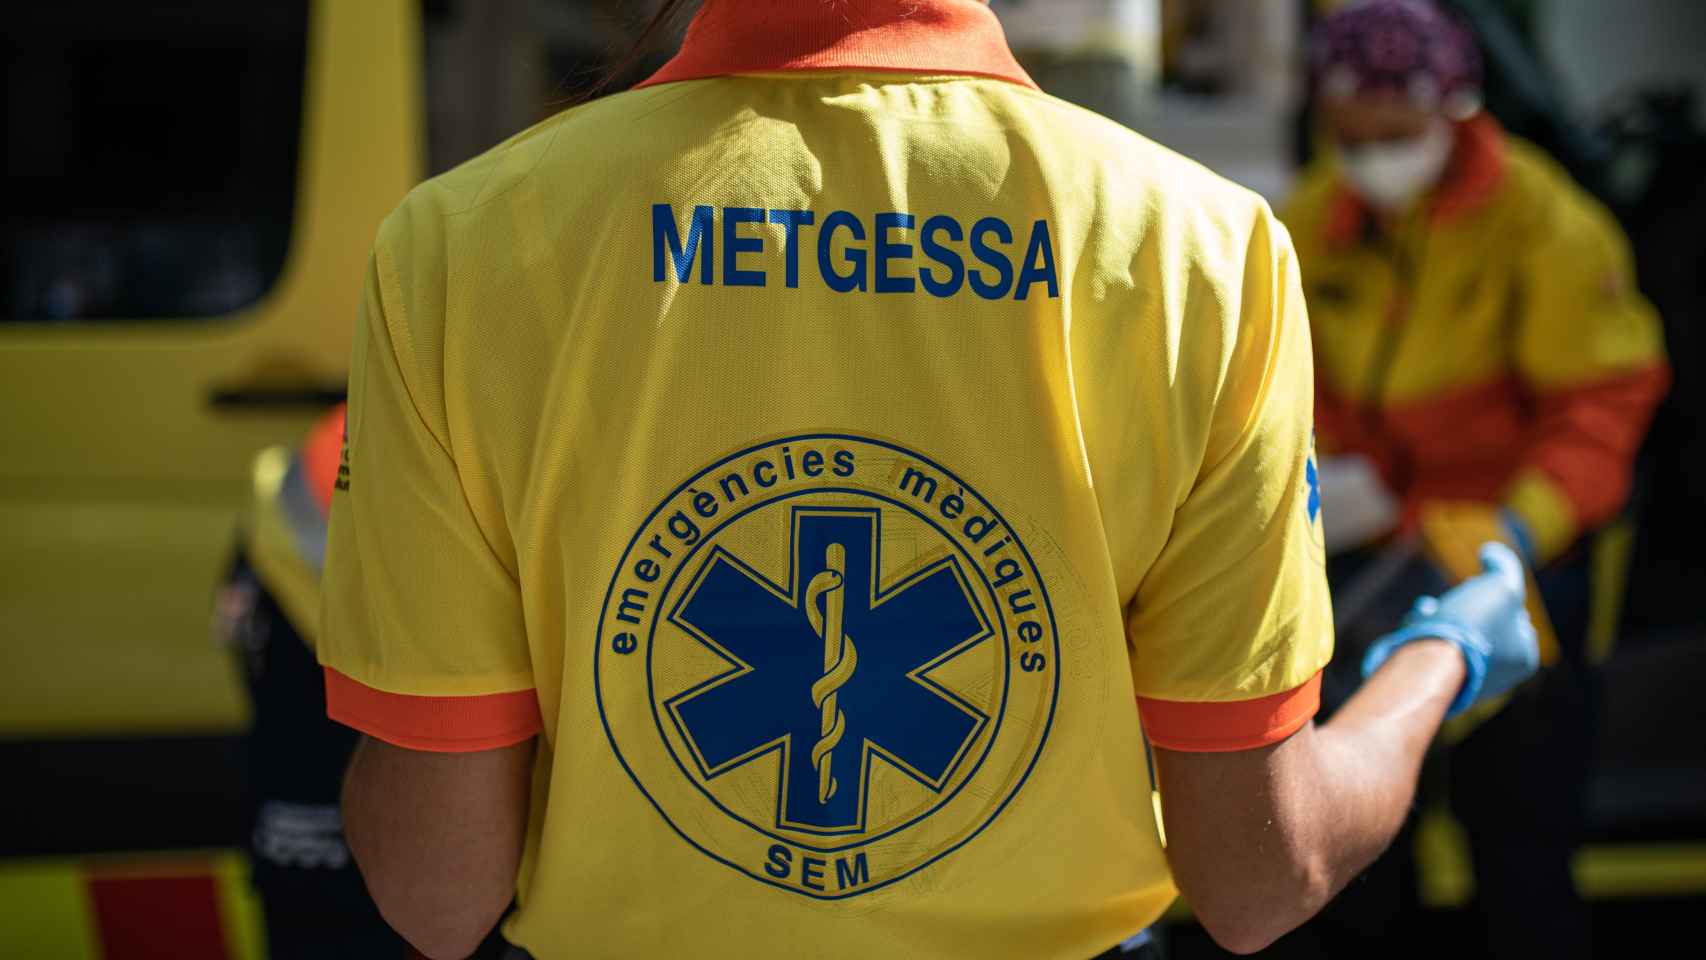 Técnicos del sistema de emergencias médicas en Cataluña / EP